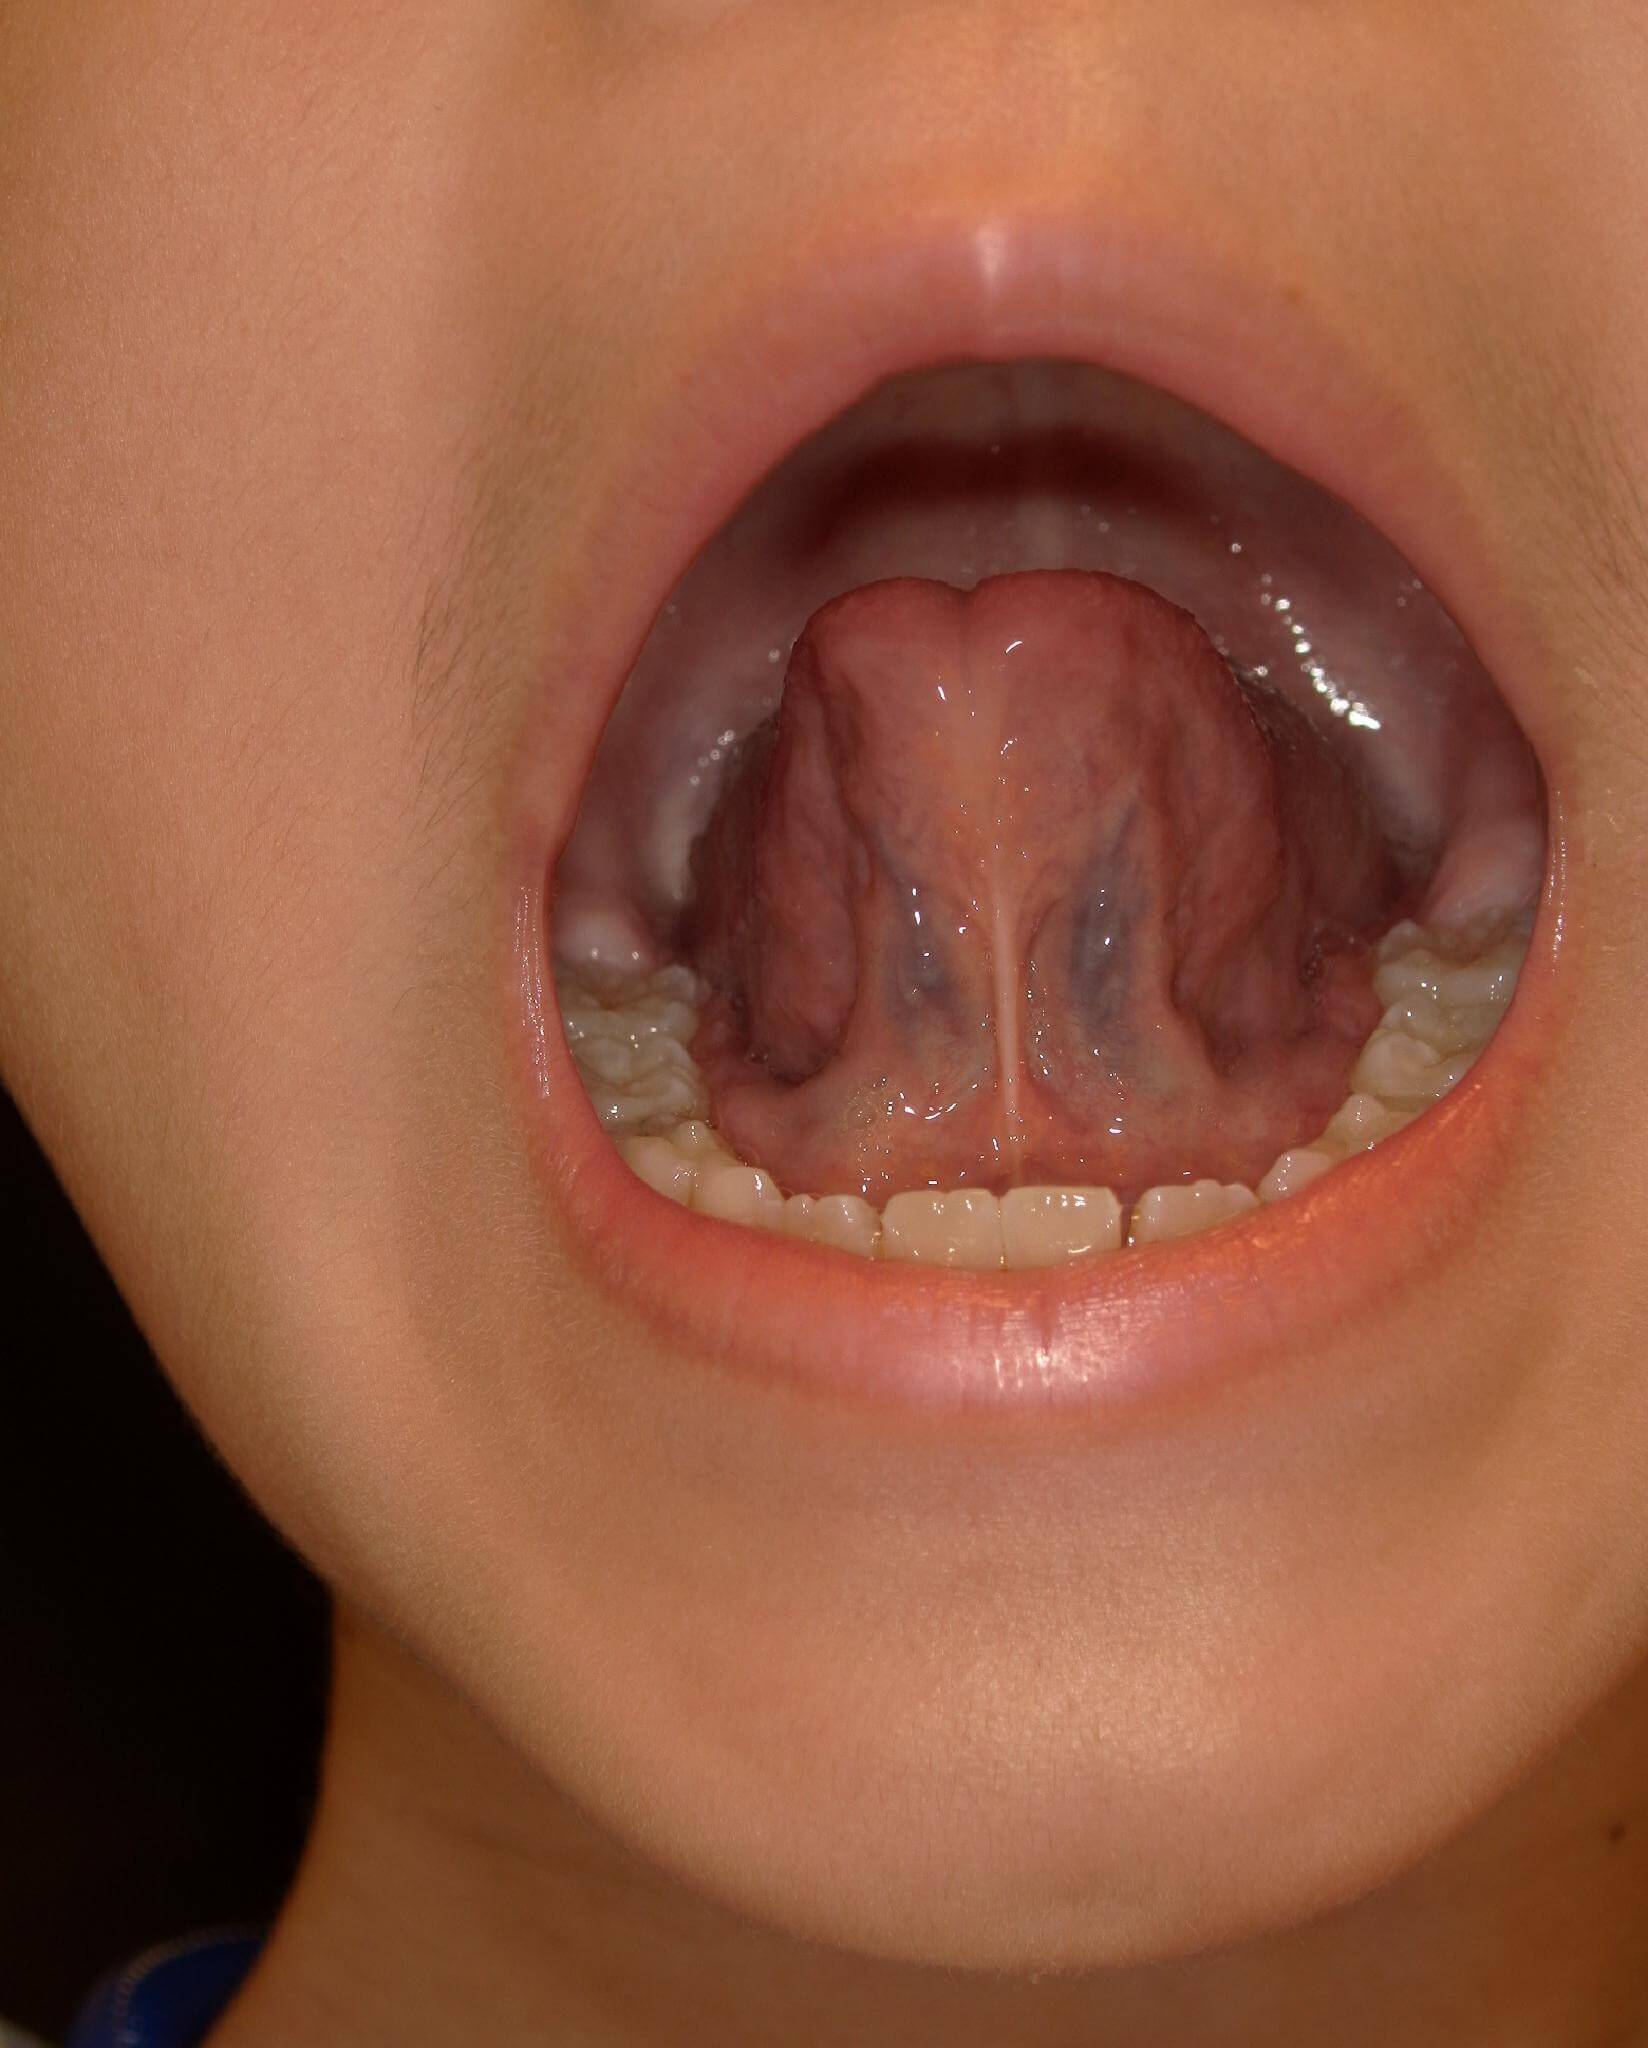 舌小帯の手術を行っていないので大きい変化は認められないがトレーニングにより舌の可動域は広がった。